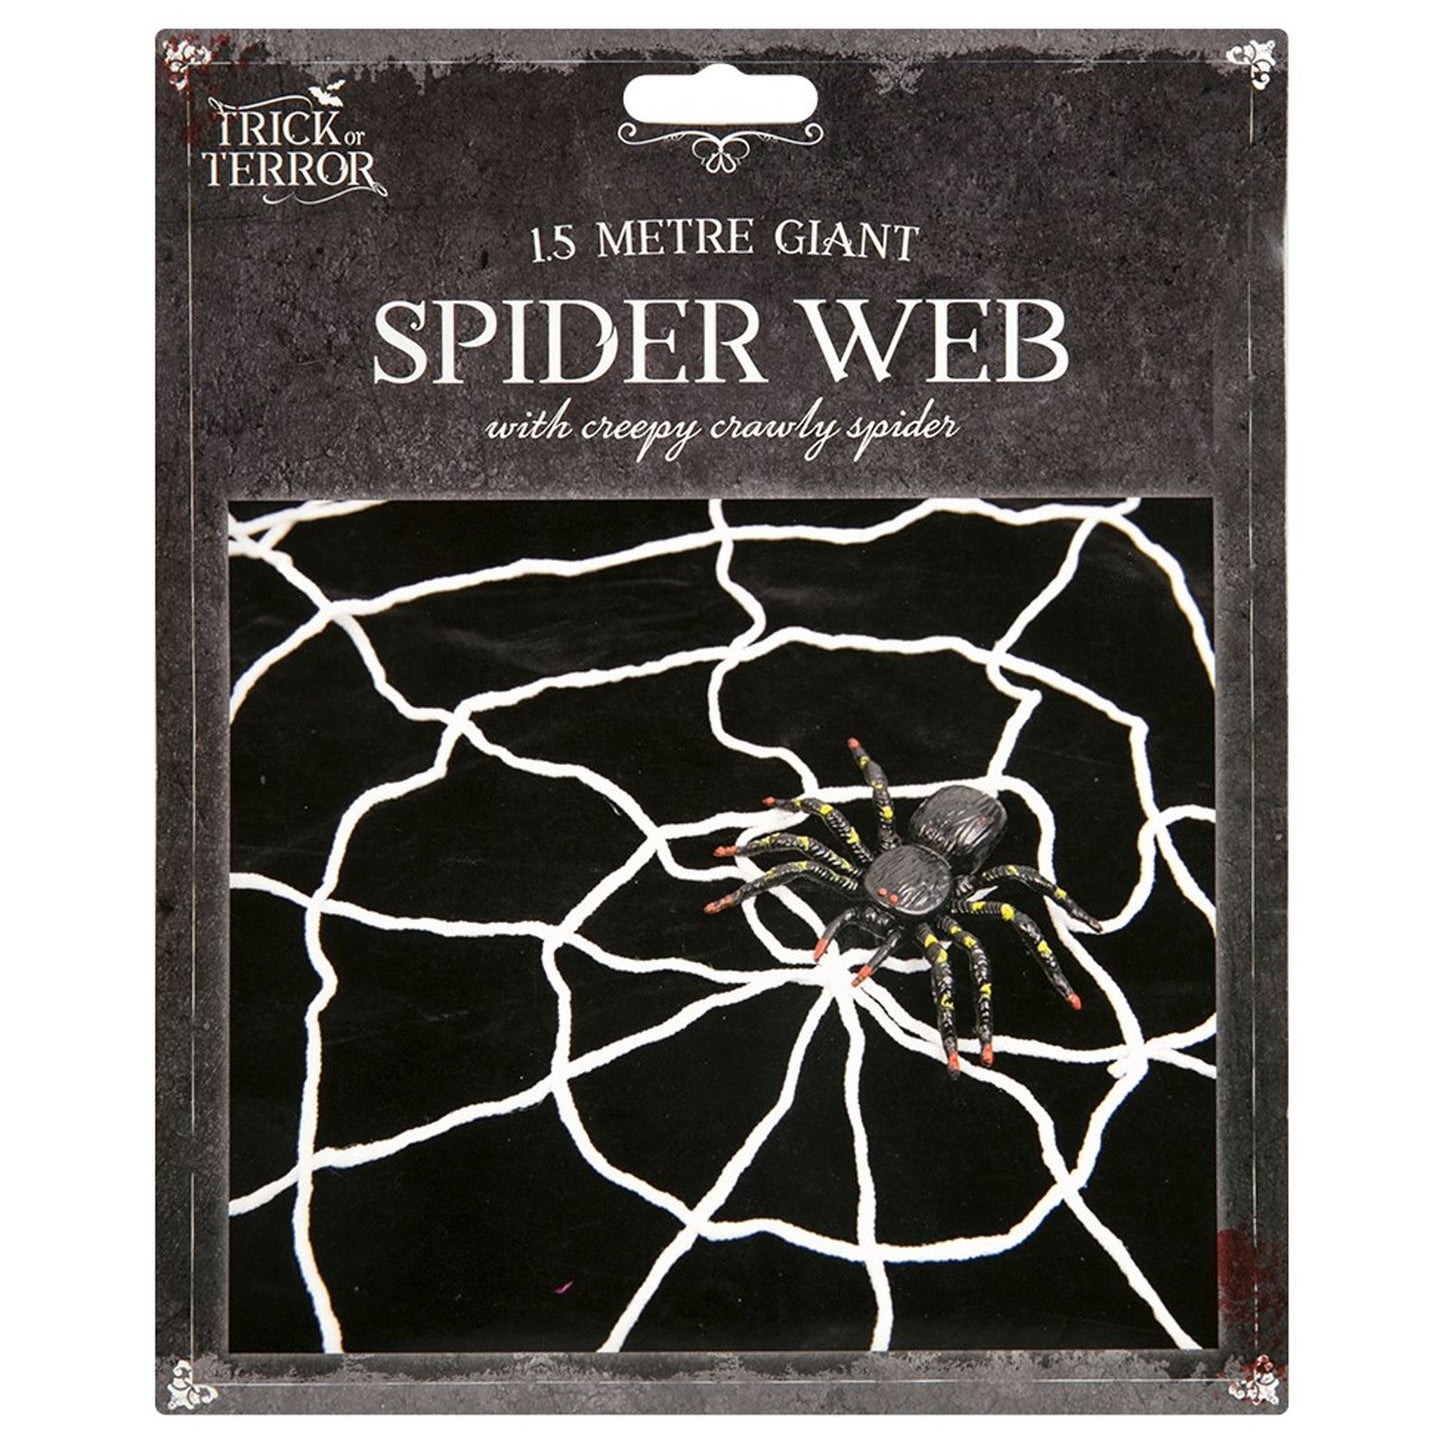 Large Spider Web Halloween Spider Decor 1.5M Spider Web